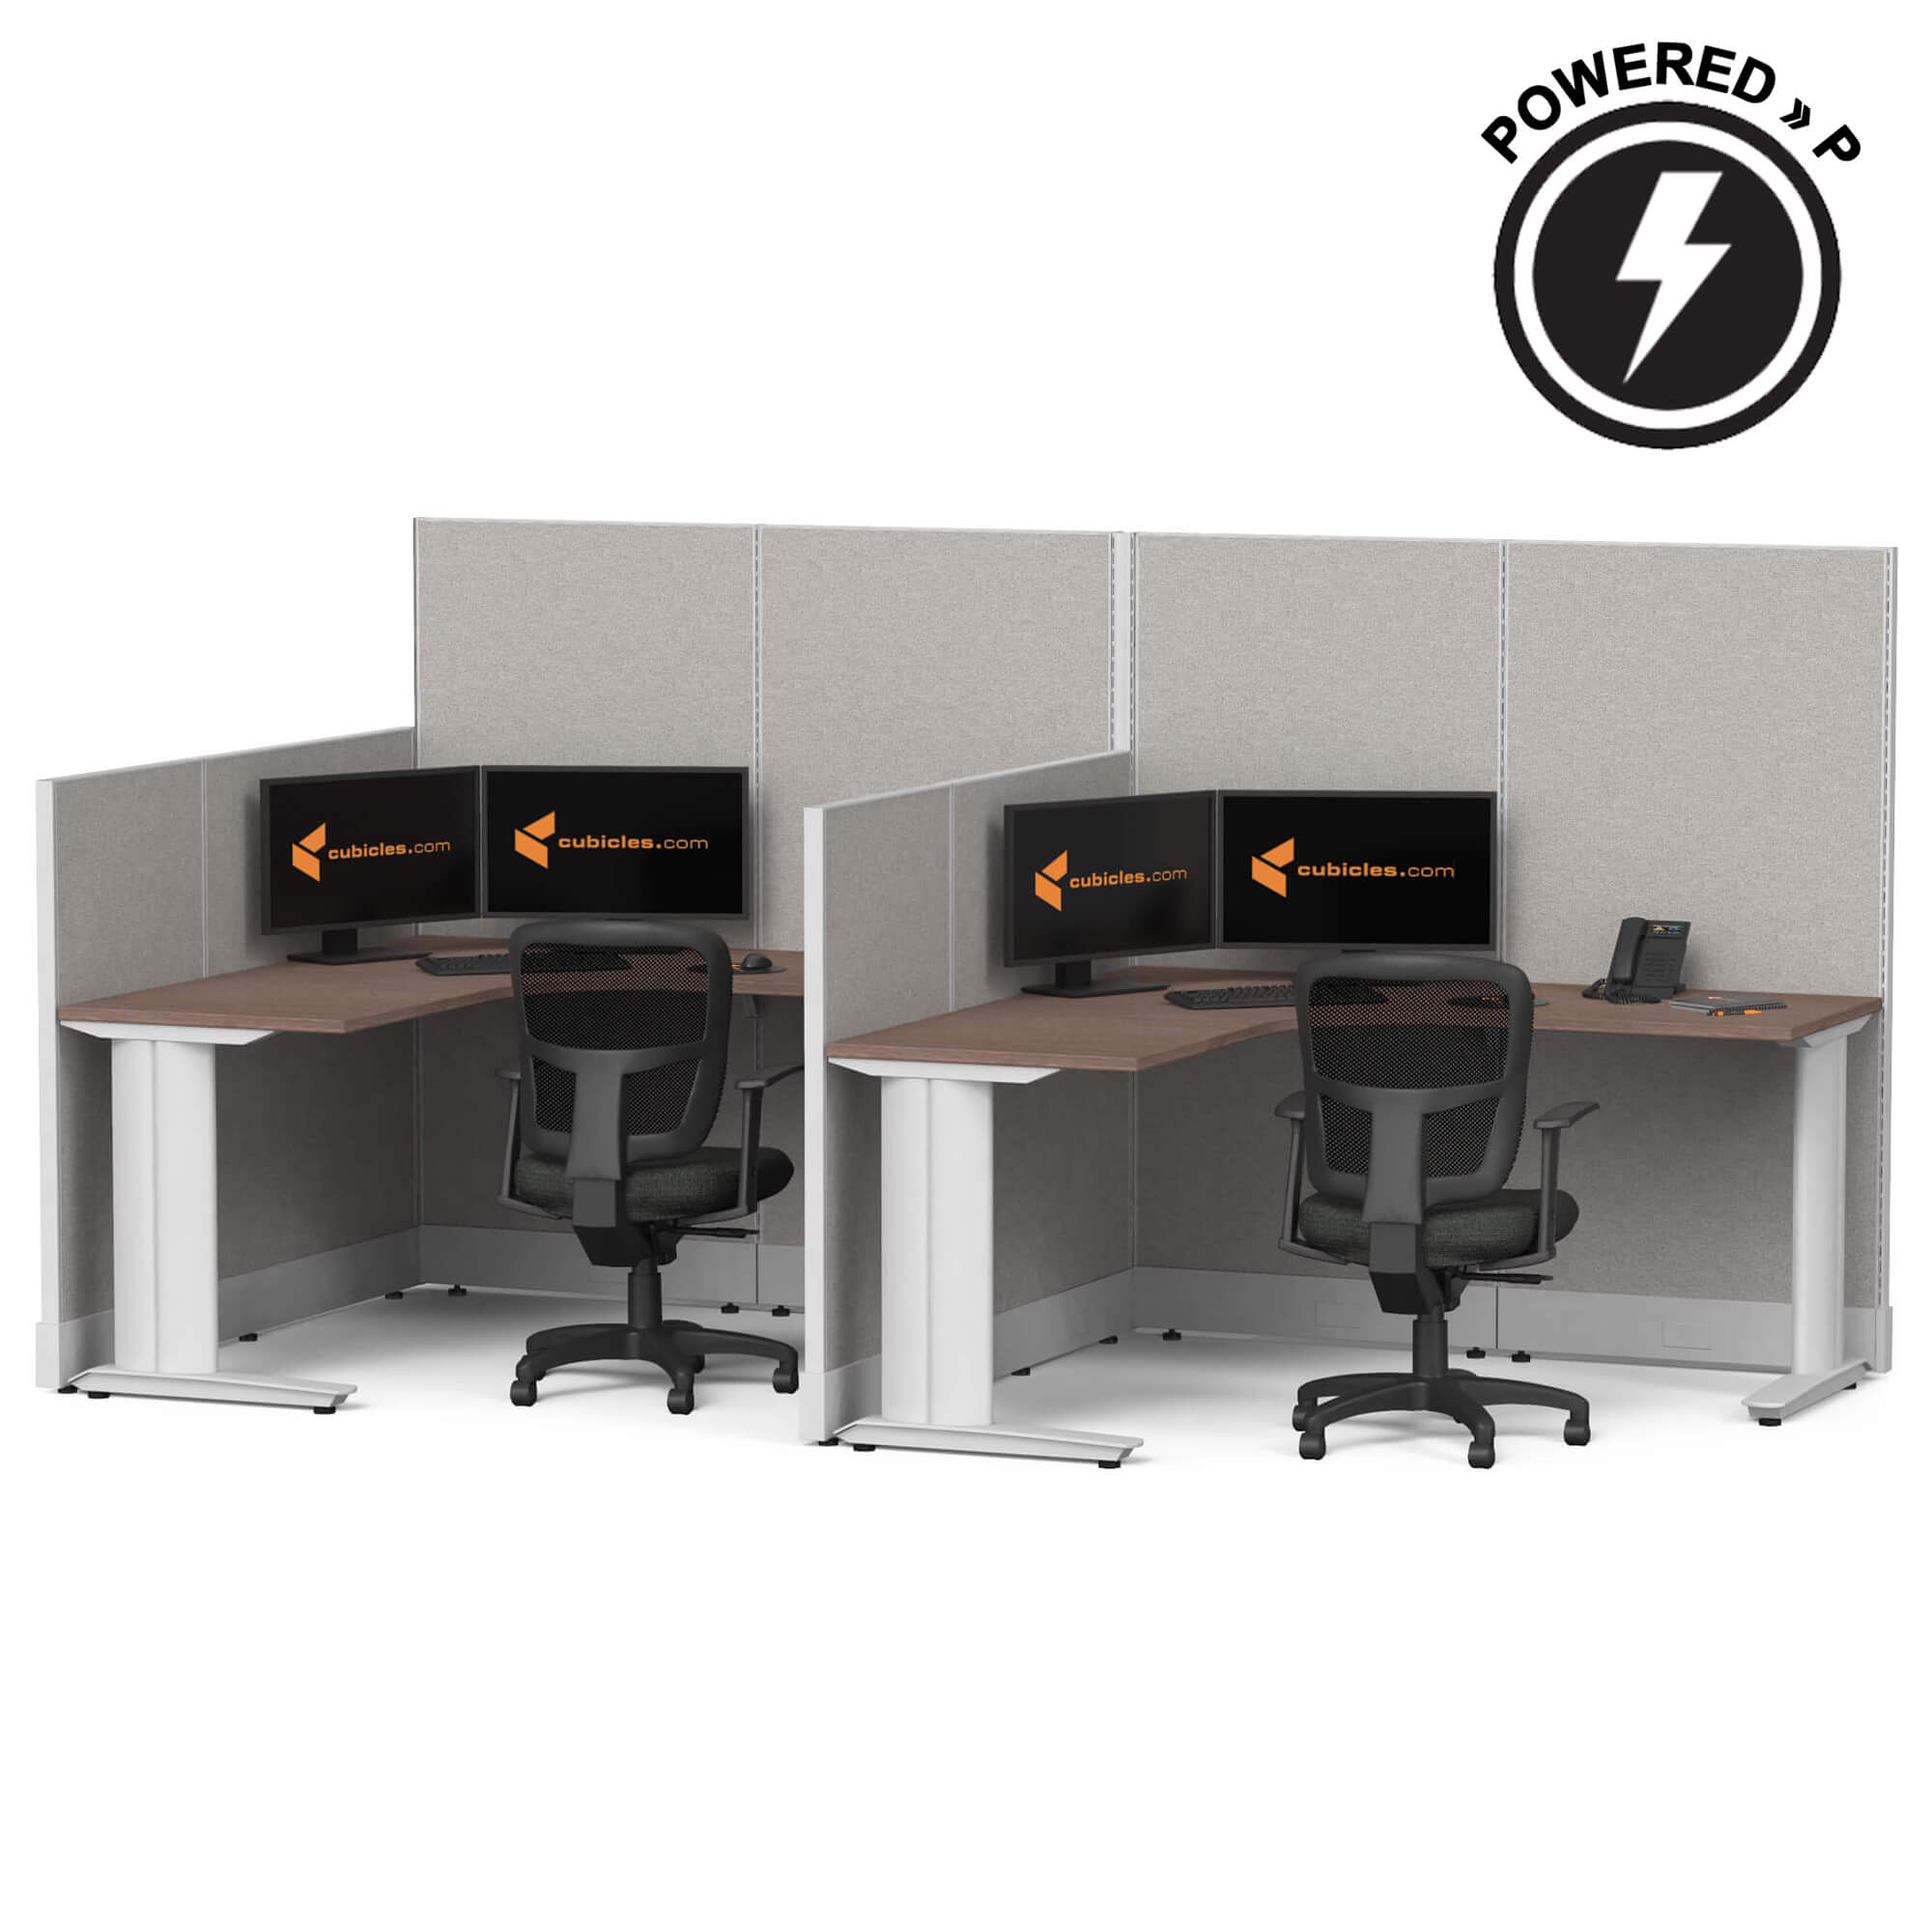 cubicle-desk-l-shaped-workstation-2pack-inline-powered-sign.jpg